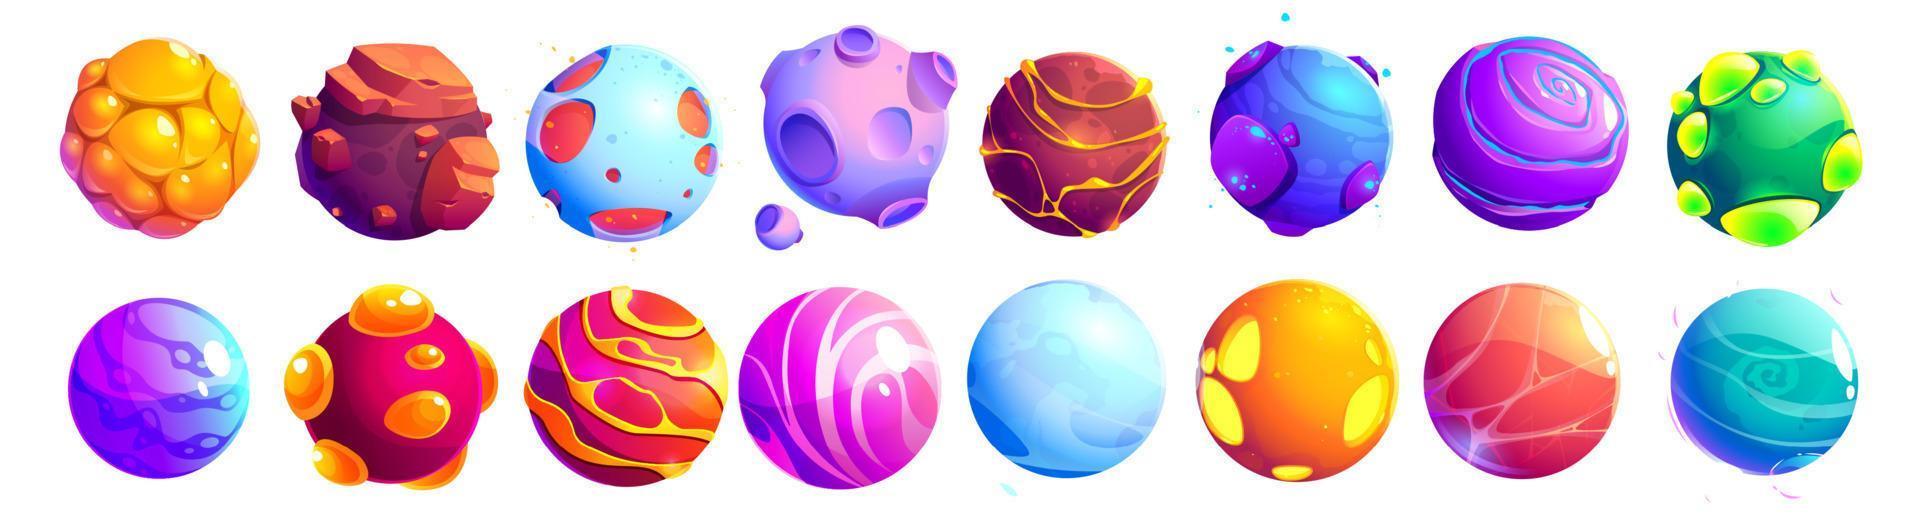 conjunto de fantásticos planetas alienígenas, asteroides de dibujos animados vector